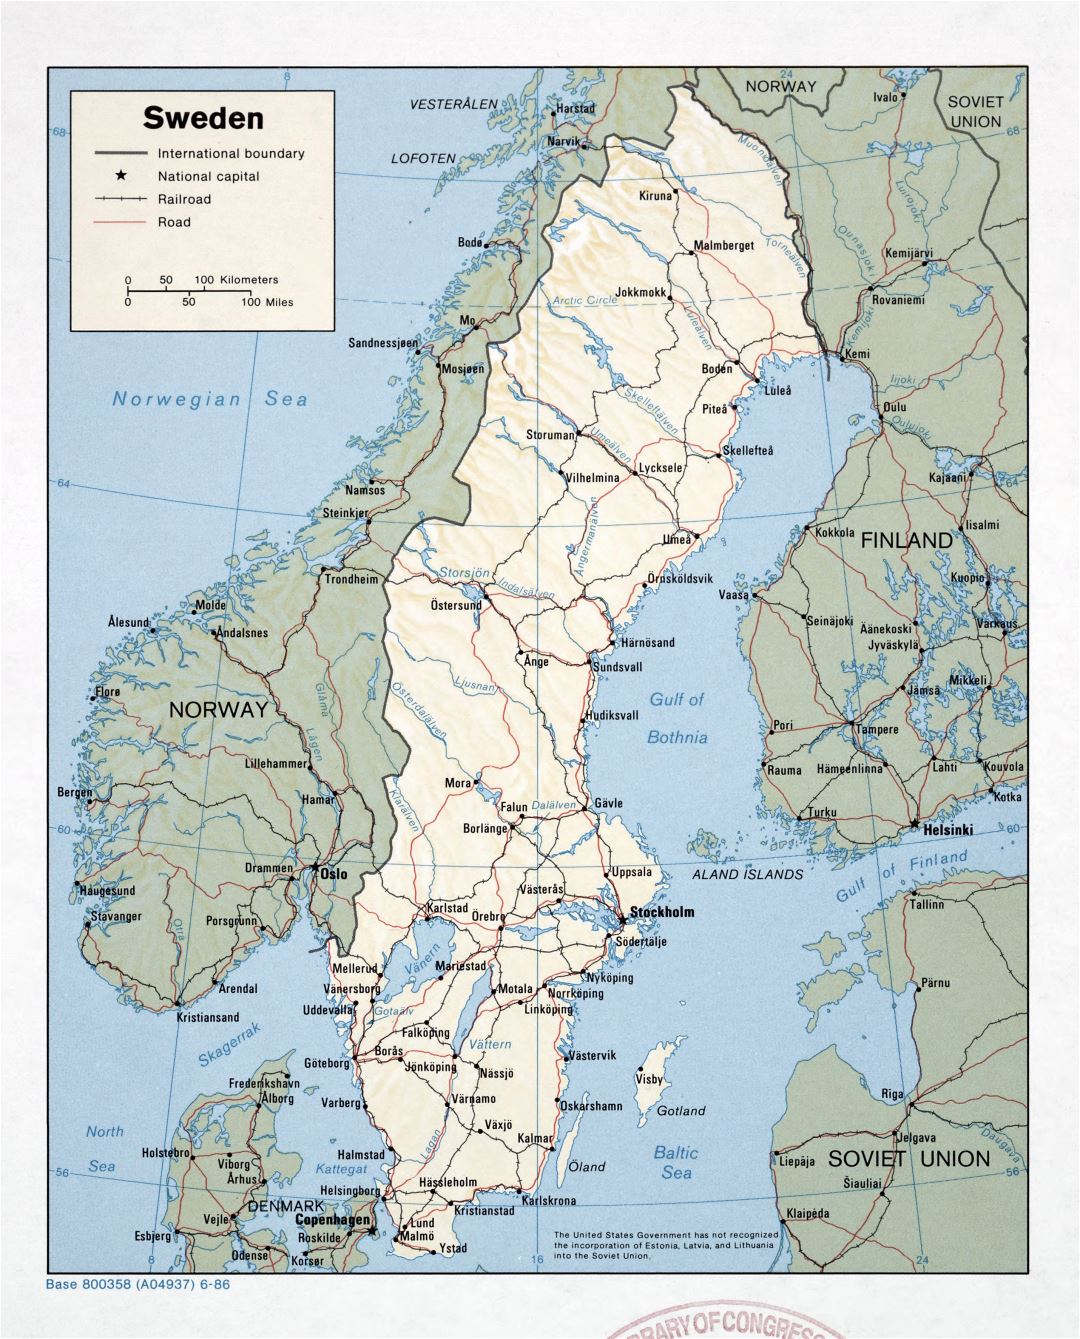 Grande detallado mapa político de Suecia con relieve, carreteras, ferrocarriles y ciudades principales - 1986